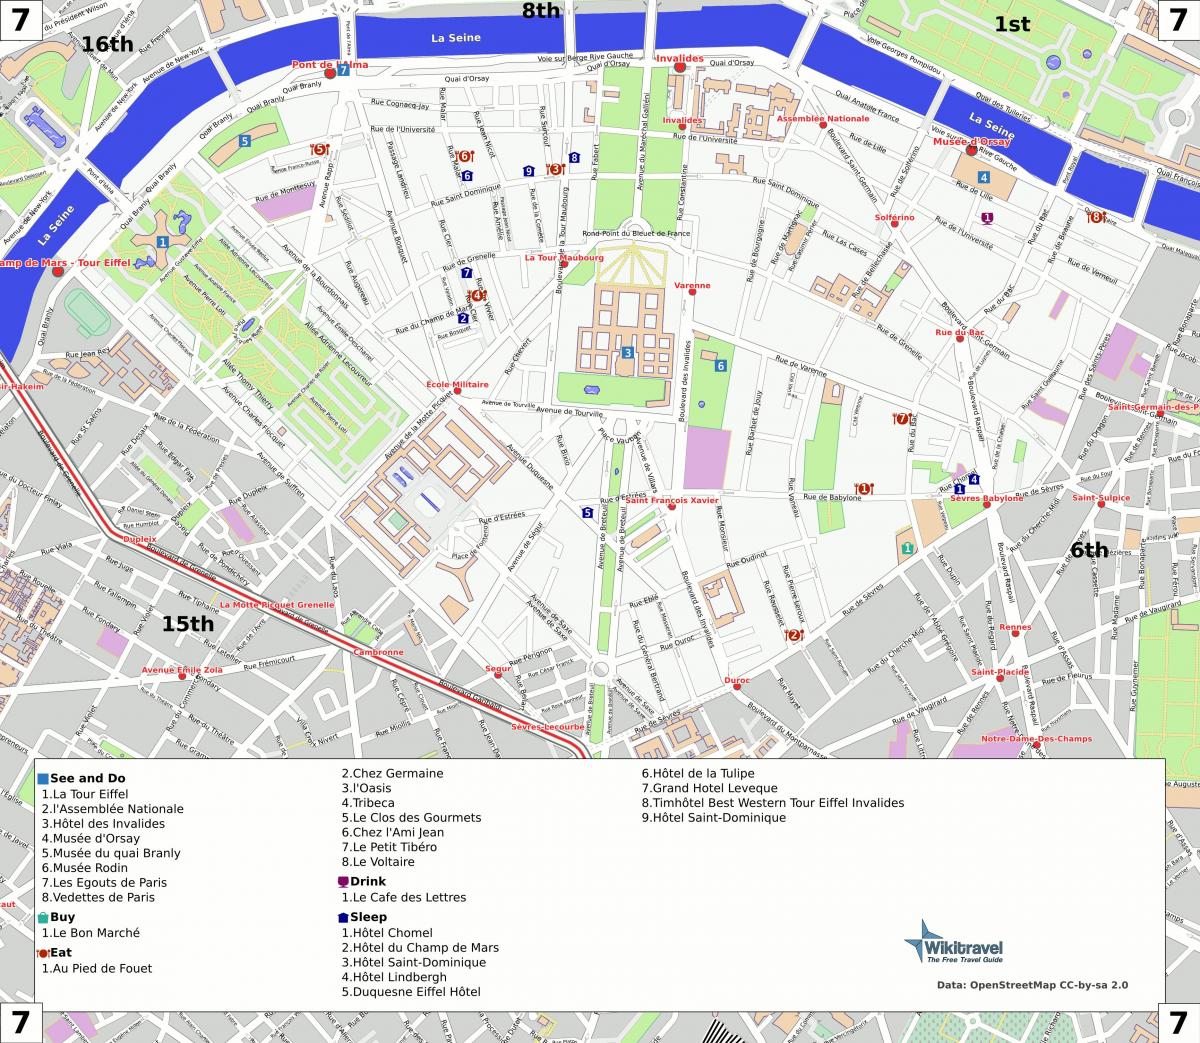 Peta dari arondisemen ke-7 dari Paris